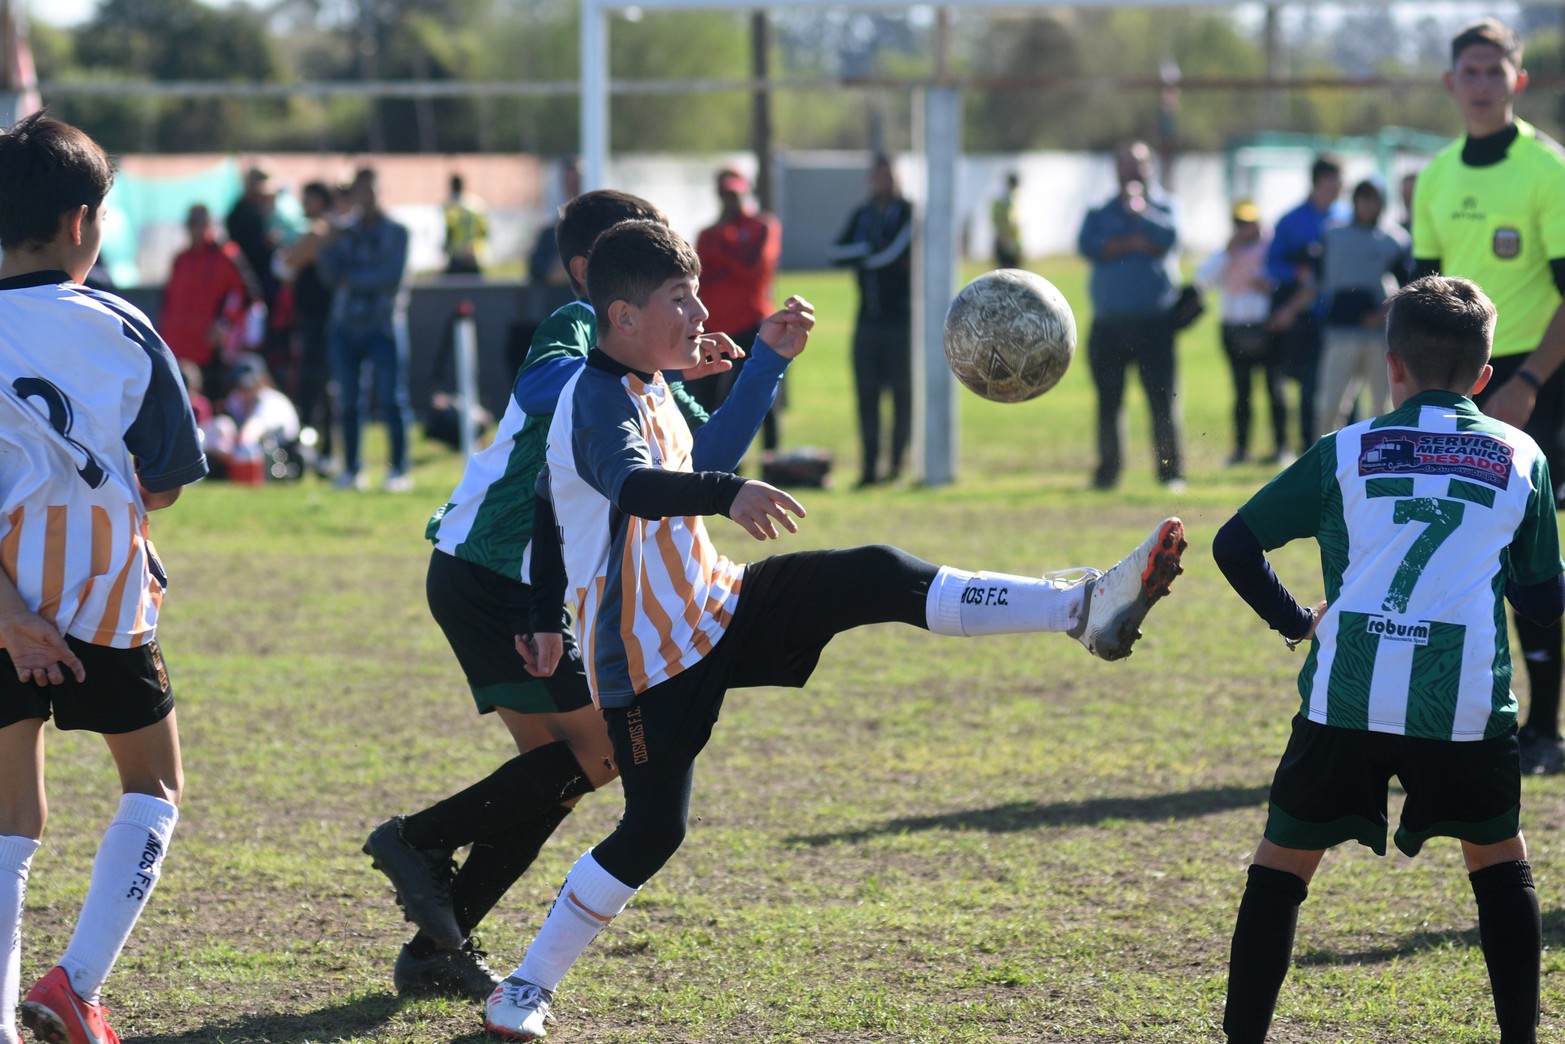 Con un gran número de chicos y padres, el Torneo Infantil "Diego Barisone" que organiza Unión de Santa Fe se desarrolla a pleno.